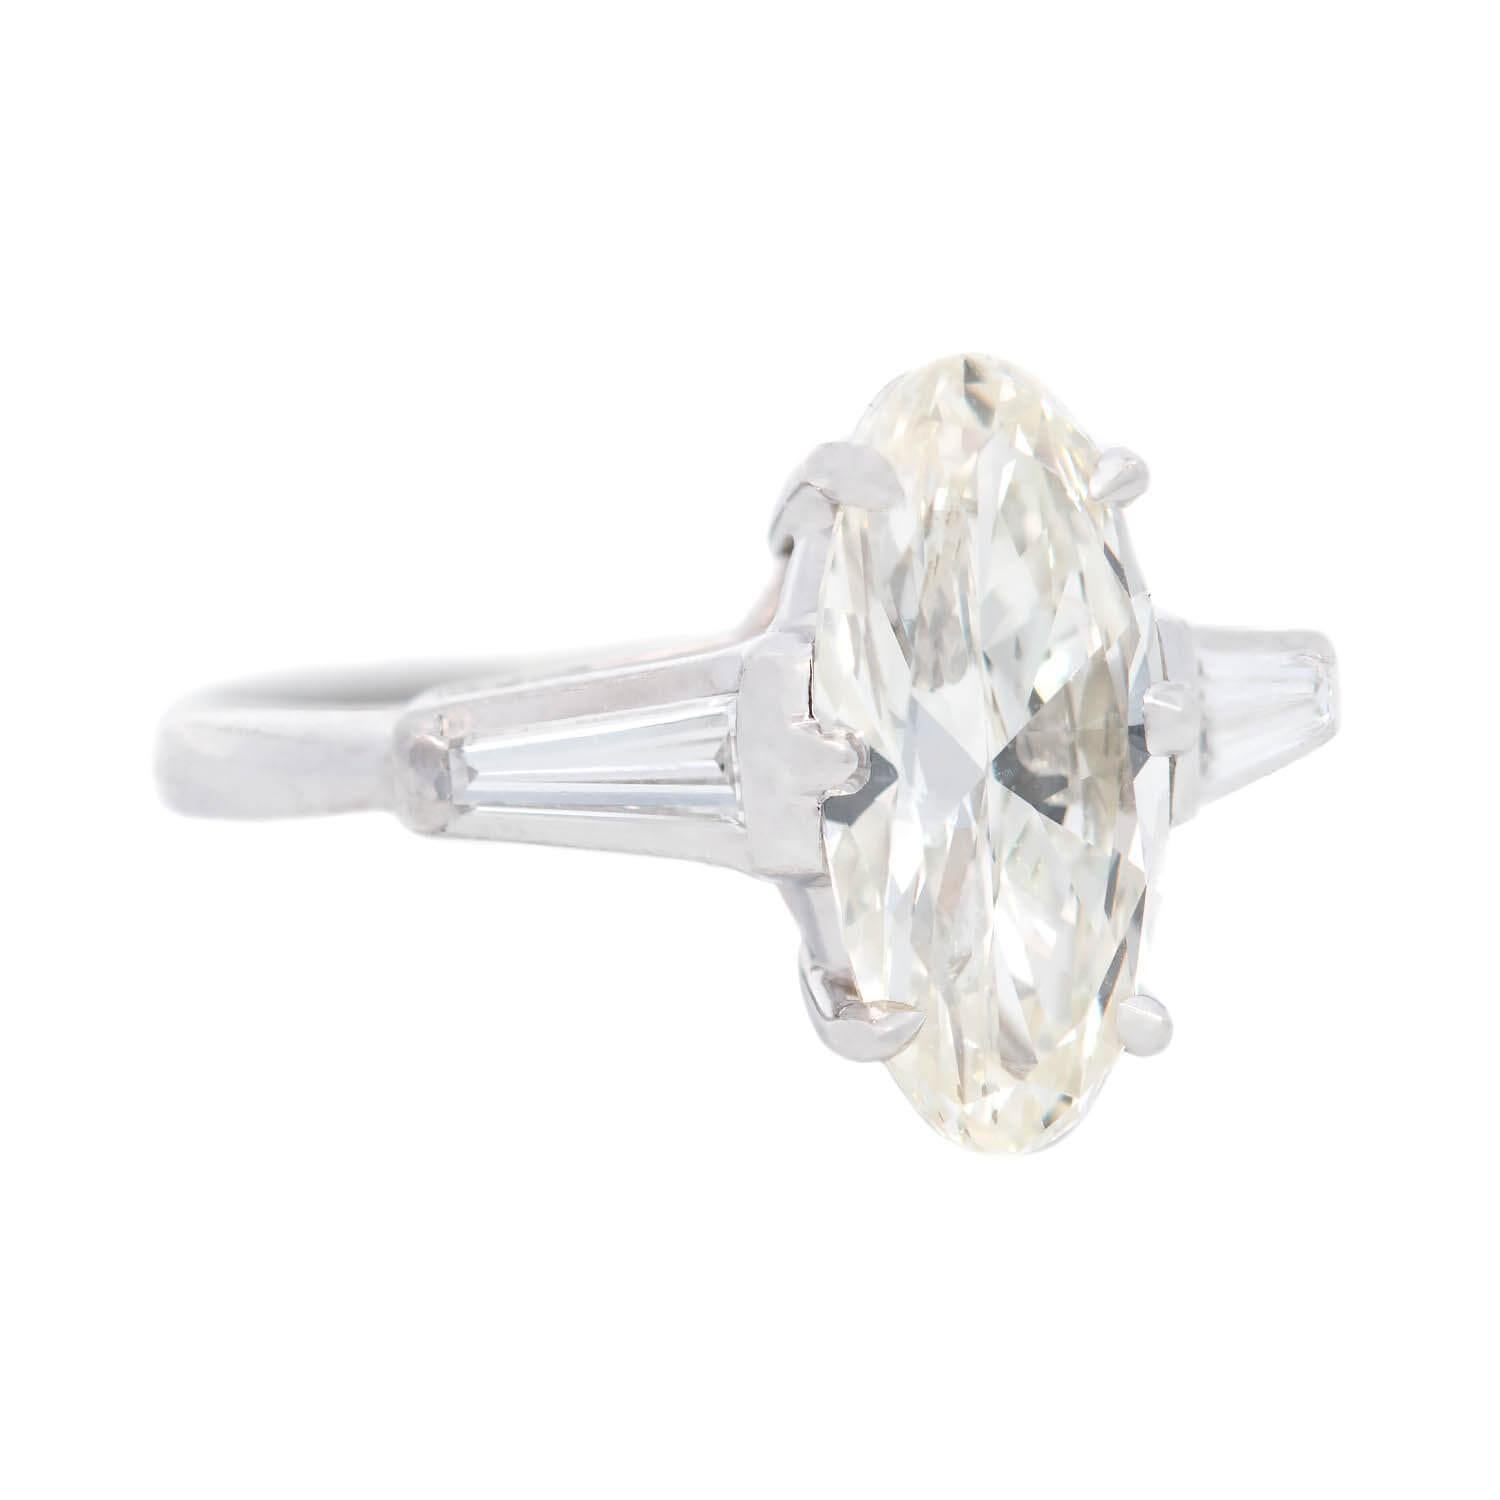 Ein einfach hervorragender Diamant-Verlobungsring aus der Vintage-Ära (ca. 1960)! Dieses schöne Stück ist aus Platin gefertigt und trägt in der Mitte einen wunderschönen Diamanten im Moval-Schliff, eine Art modifizierter Marquise-Schliff. Der